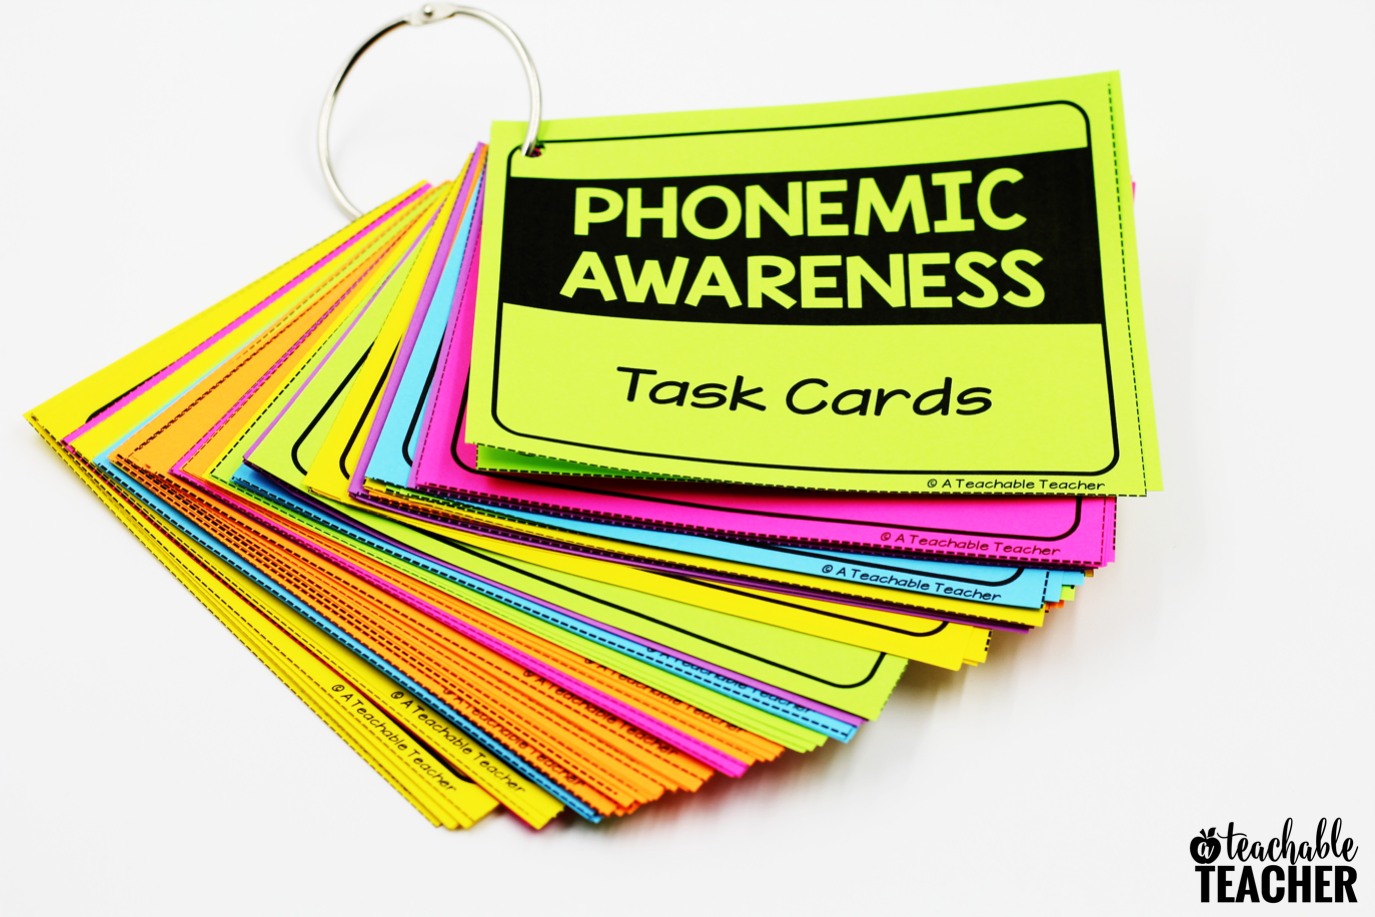 phonemic awareness teacher task cards